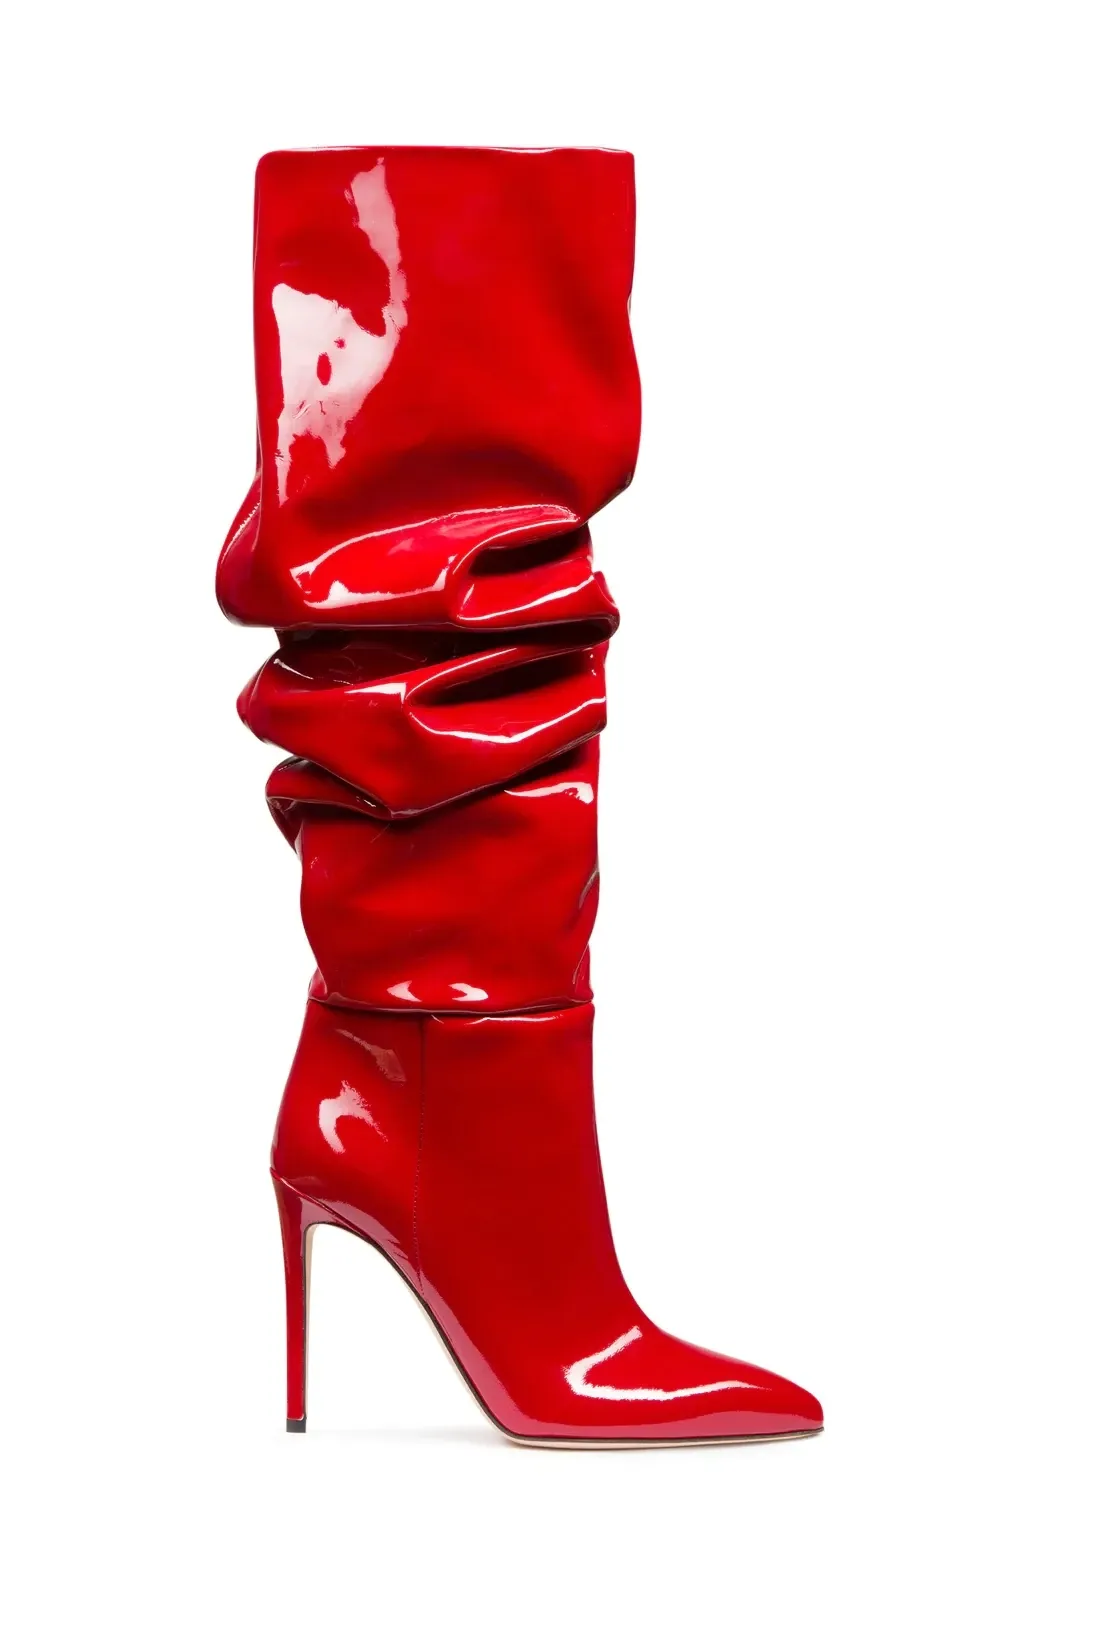 أحذية 2023 ترهل ركبة المرأة العالية بأحذية أسود حمراء براءات الاختراع من الجلد مثير الكعب مدبب إصبع القدم أحذية الشتاء الكبيرة أحذية كبيرة